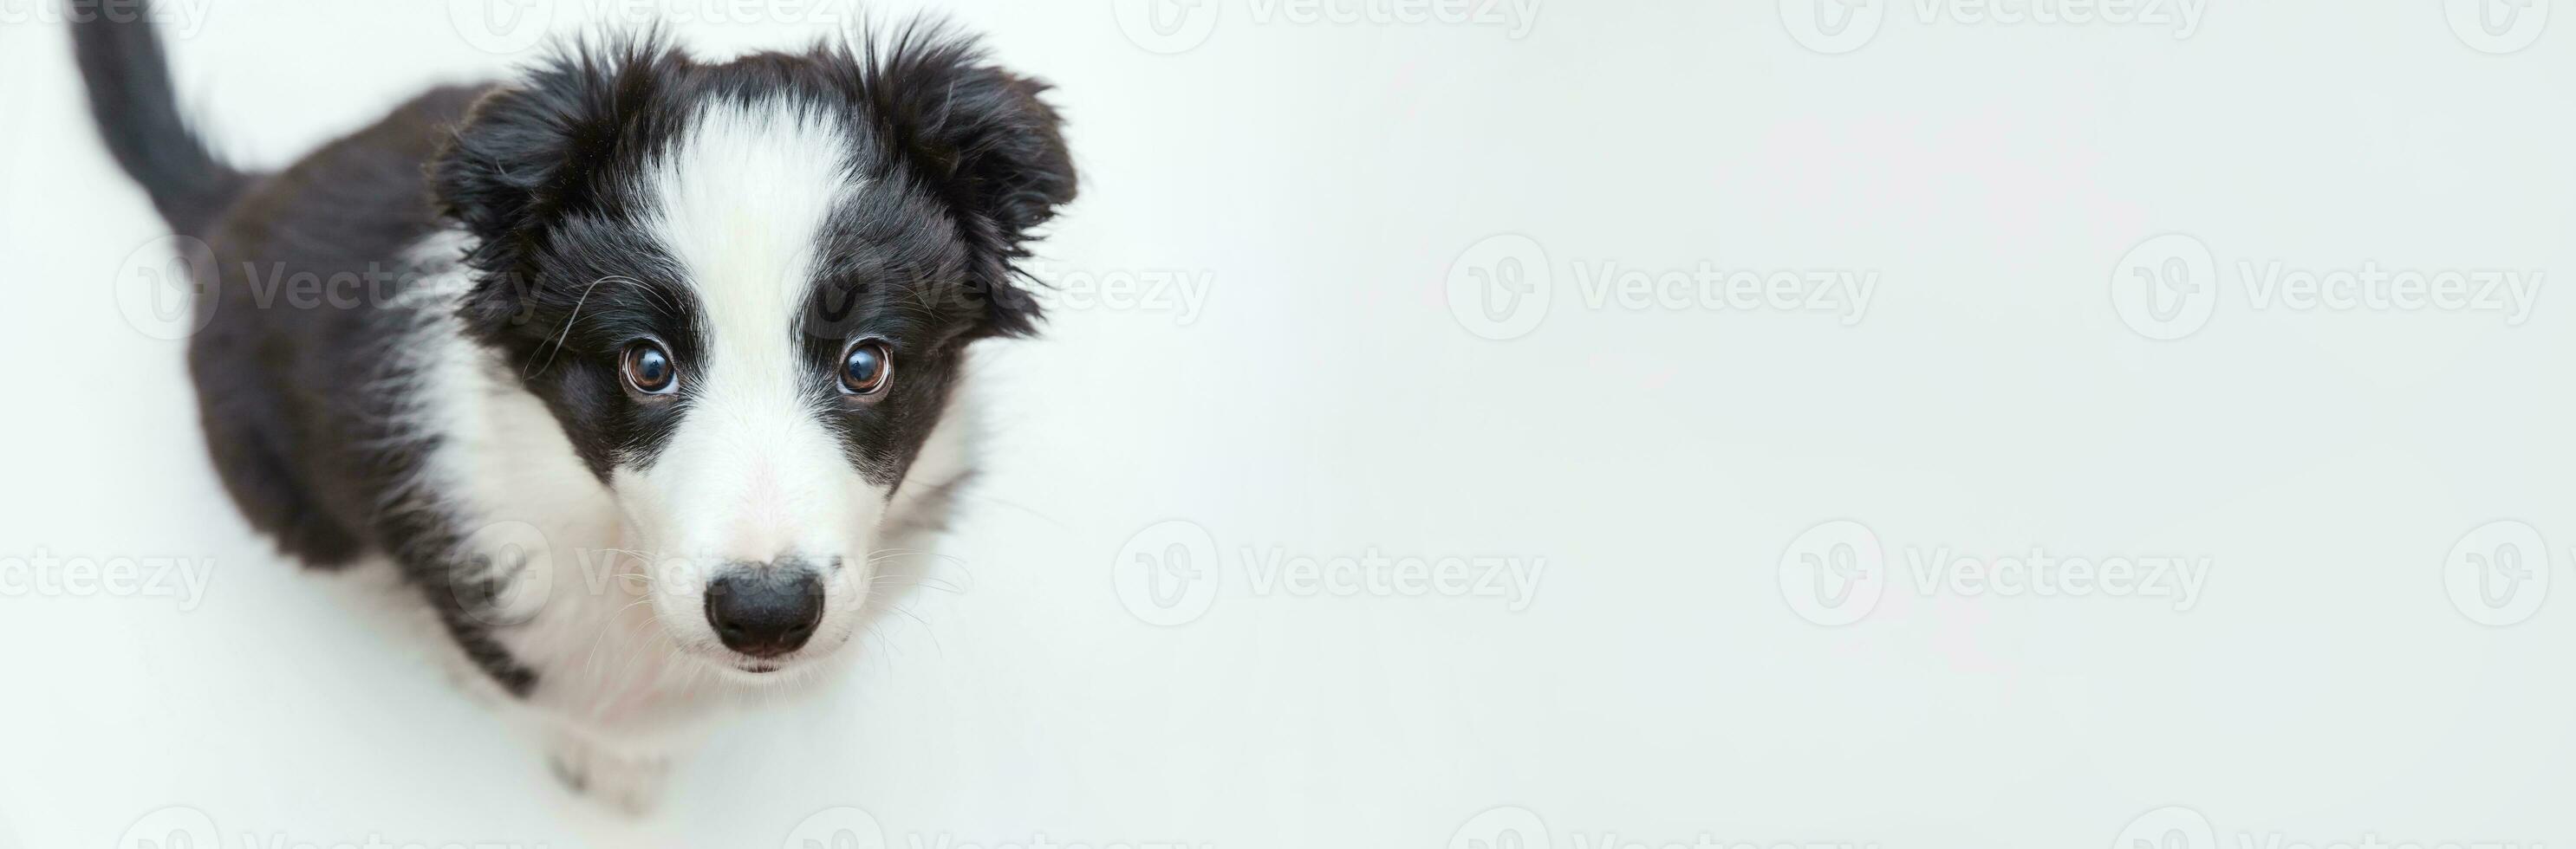 divertente ritratto in studio di carino smilling cucciolo di cane border collie isolato su sfondo bianco. concetto di cura degli animali e animali. striscione foto